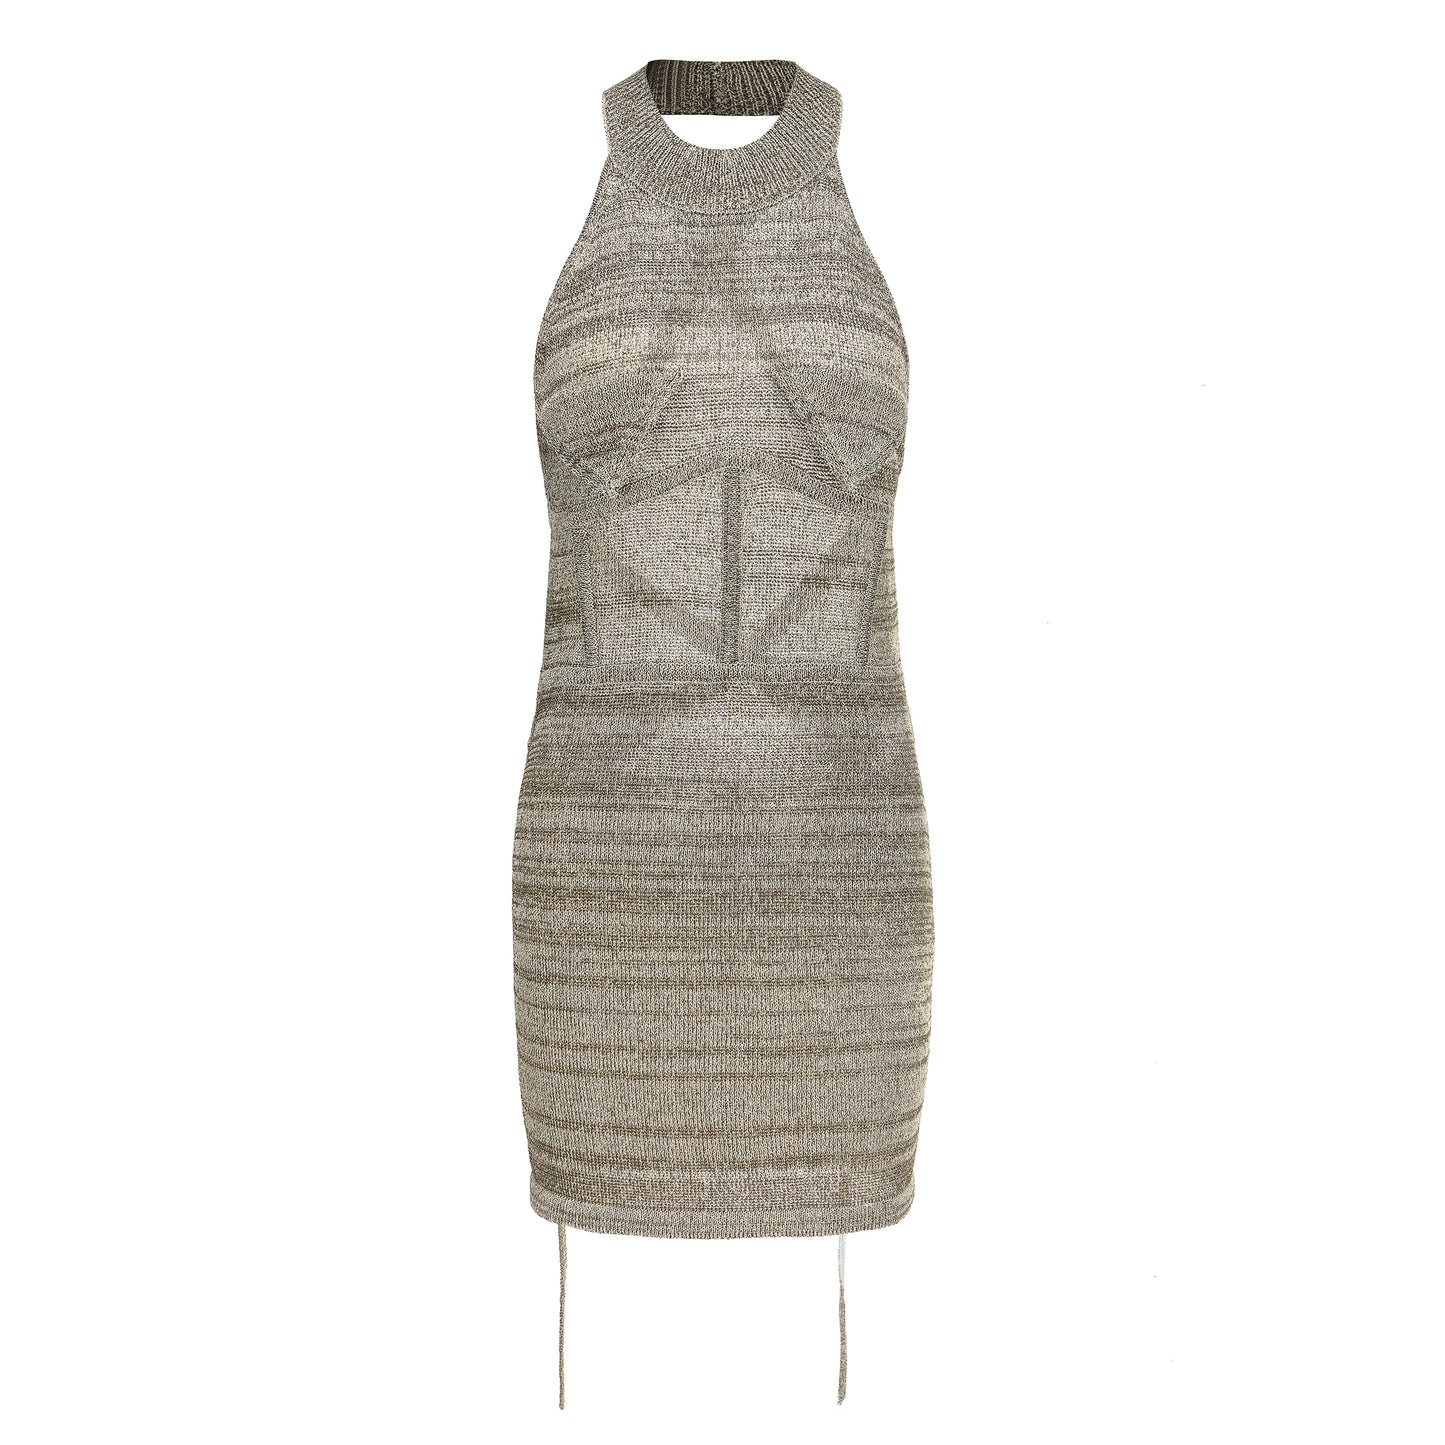 CODING - Reflective Yarn Dress